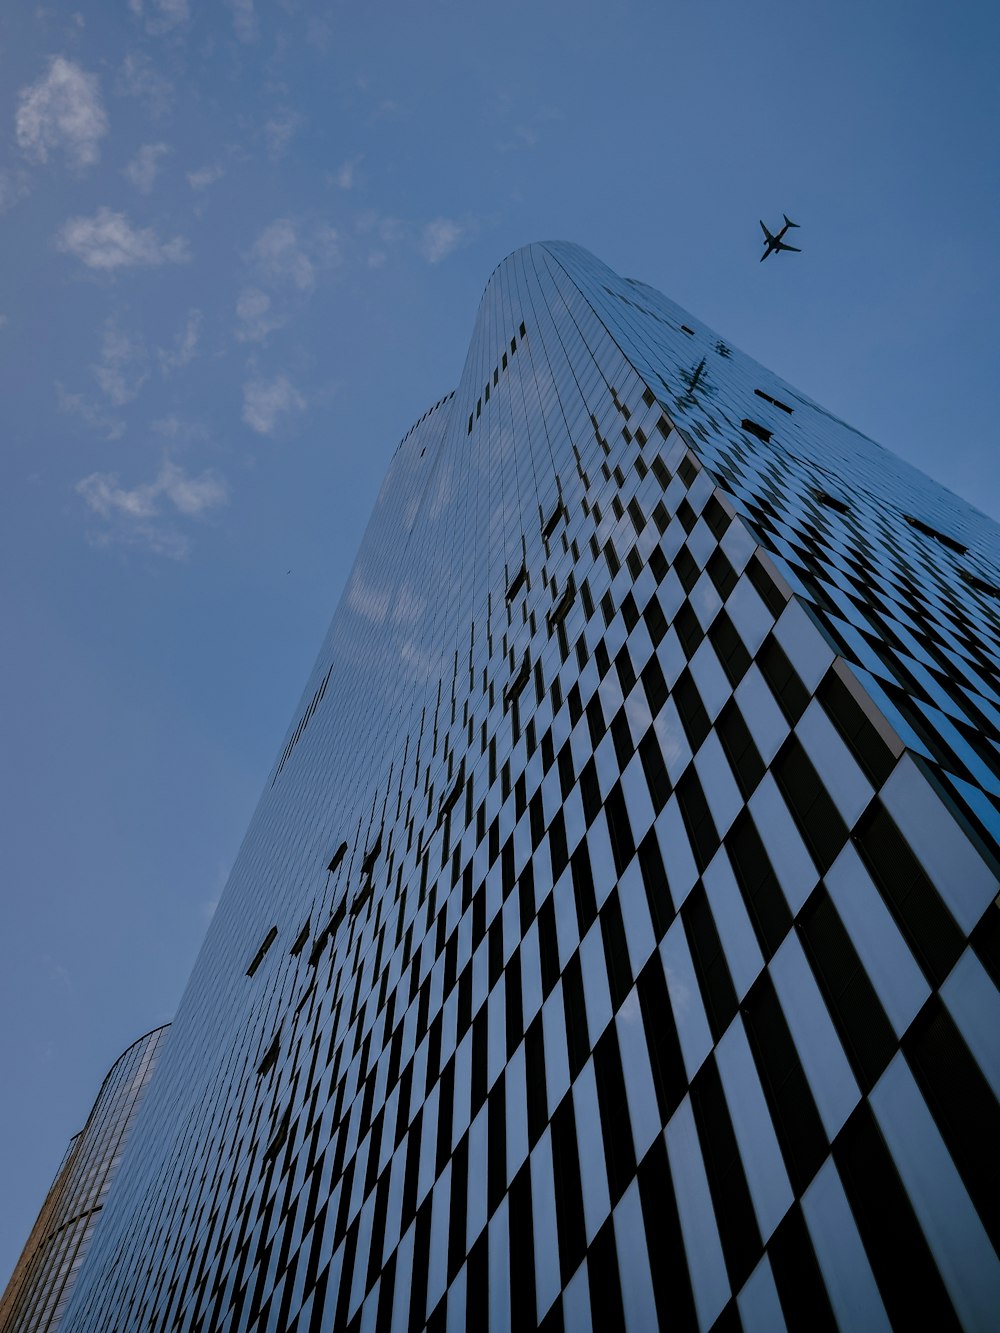 um avião sobrevoando um prédio alto com um design quadriculado